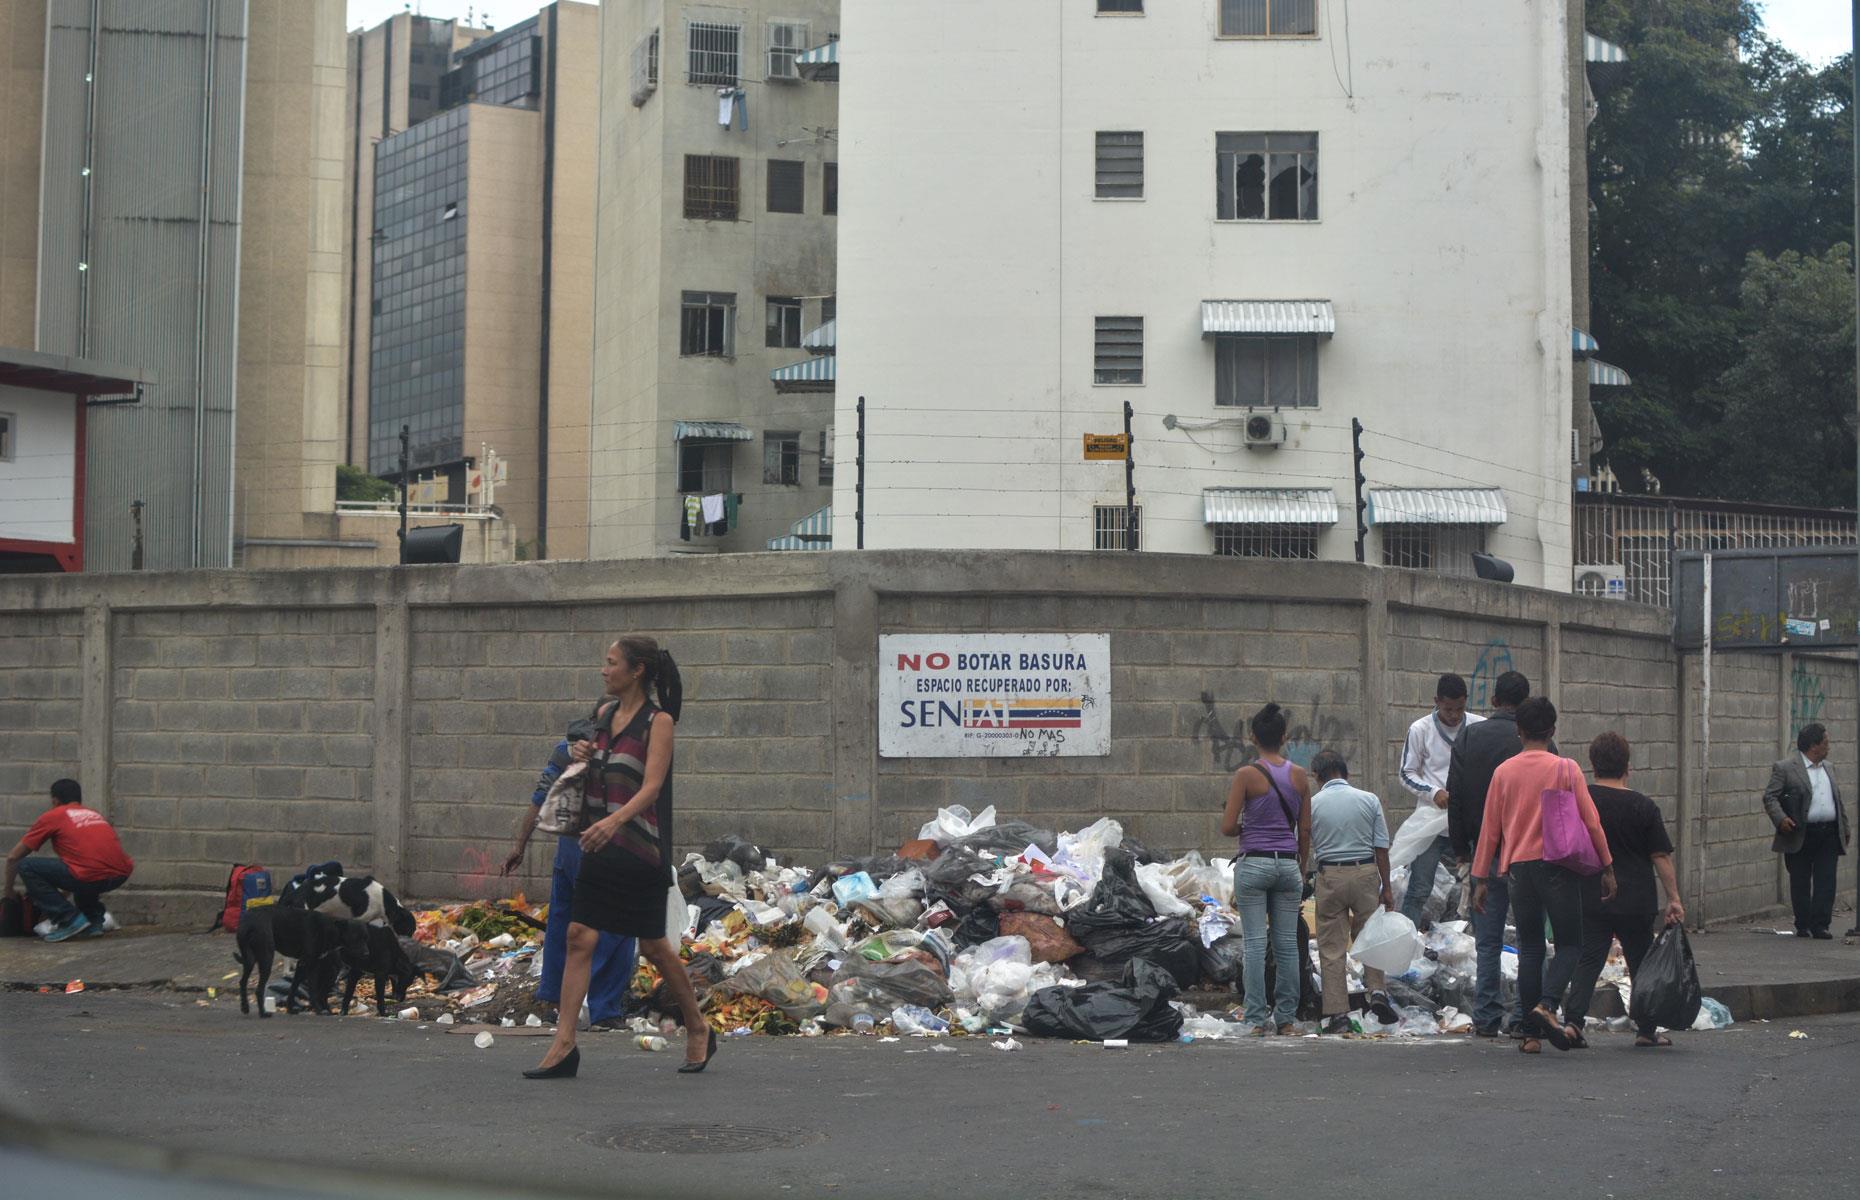 Venezuela's shrinking economy